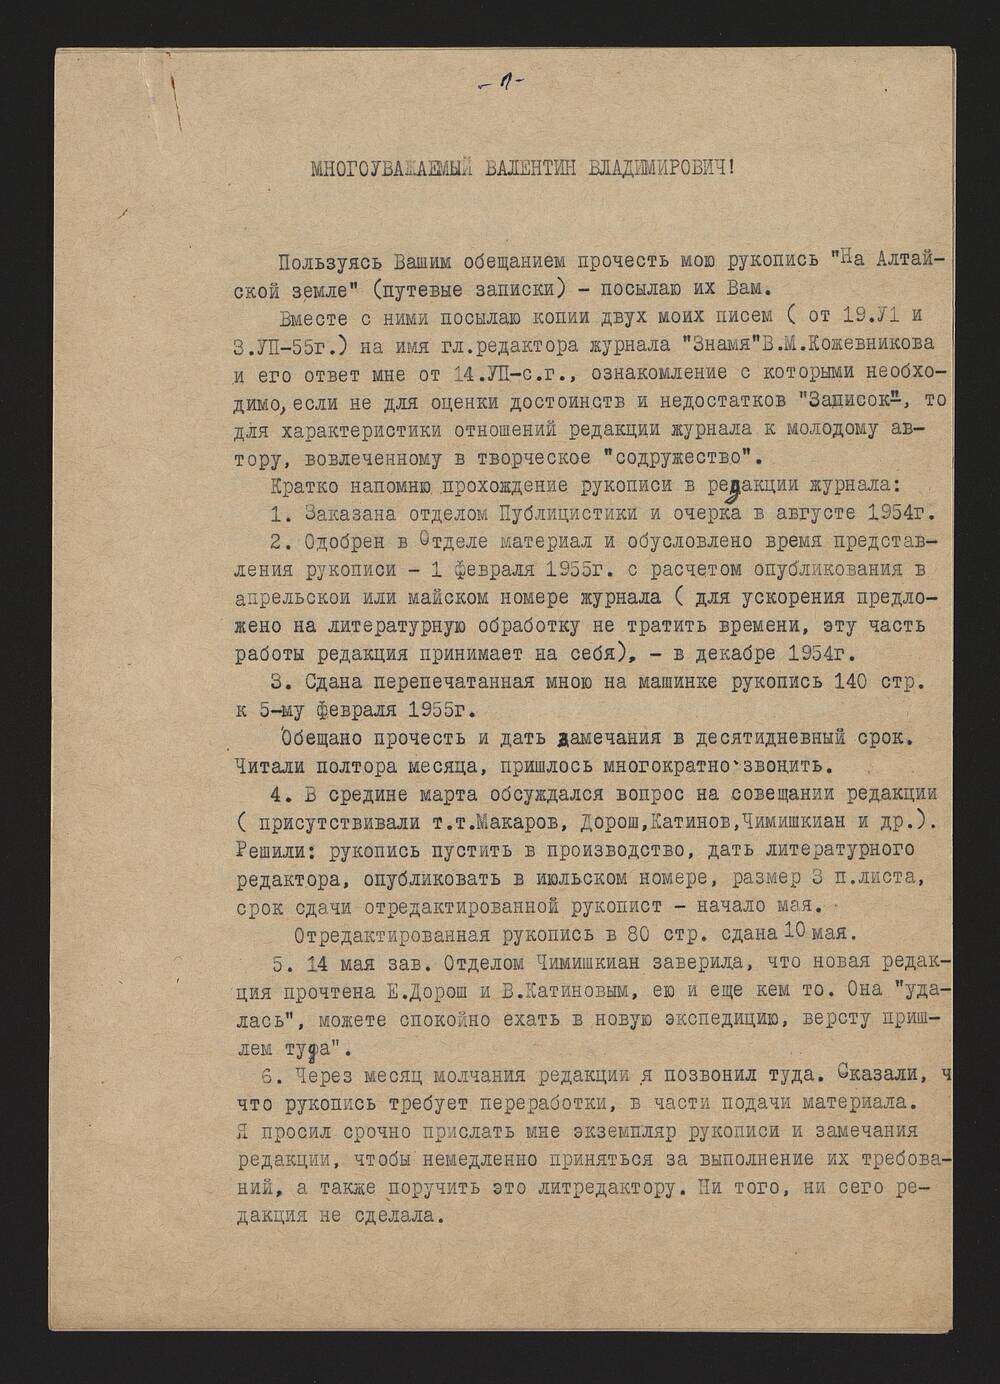 Письмо В. Овечкину от В. Рожина из Москвы от 6 ноября 1955г. 4стр. Машинопись.